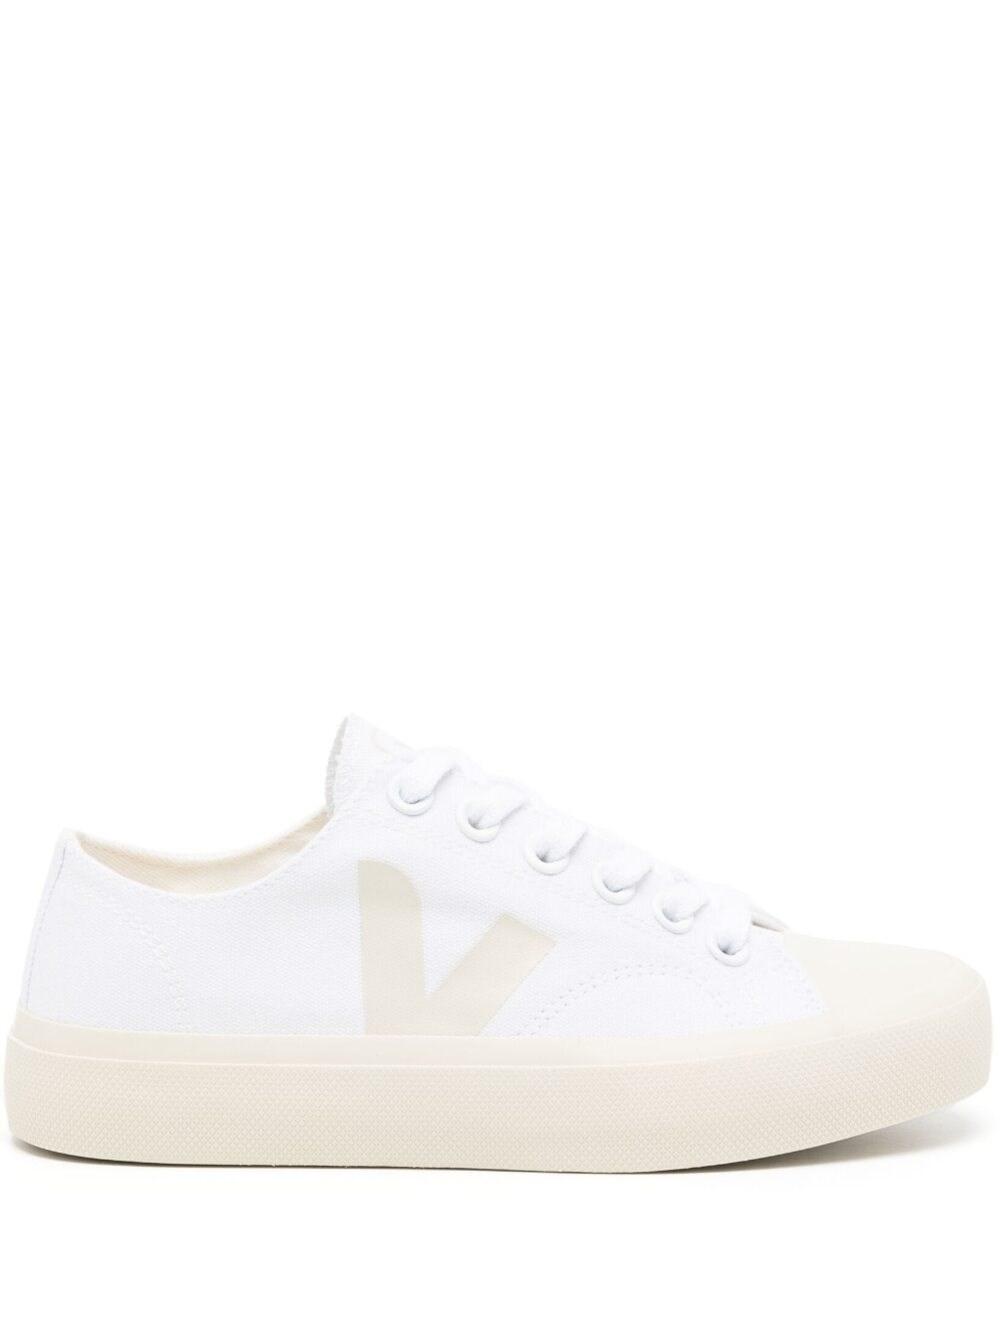 Veja Wata Ii Pierre Canvas Sneakers in White | Lyst